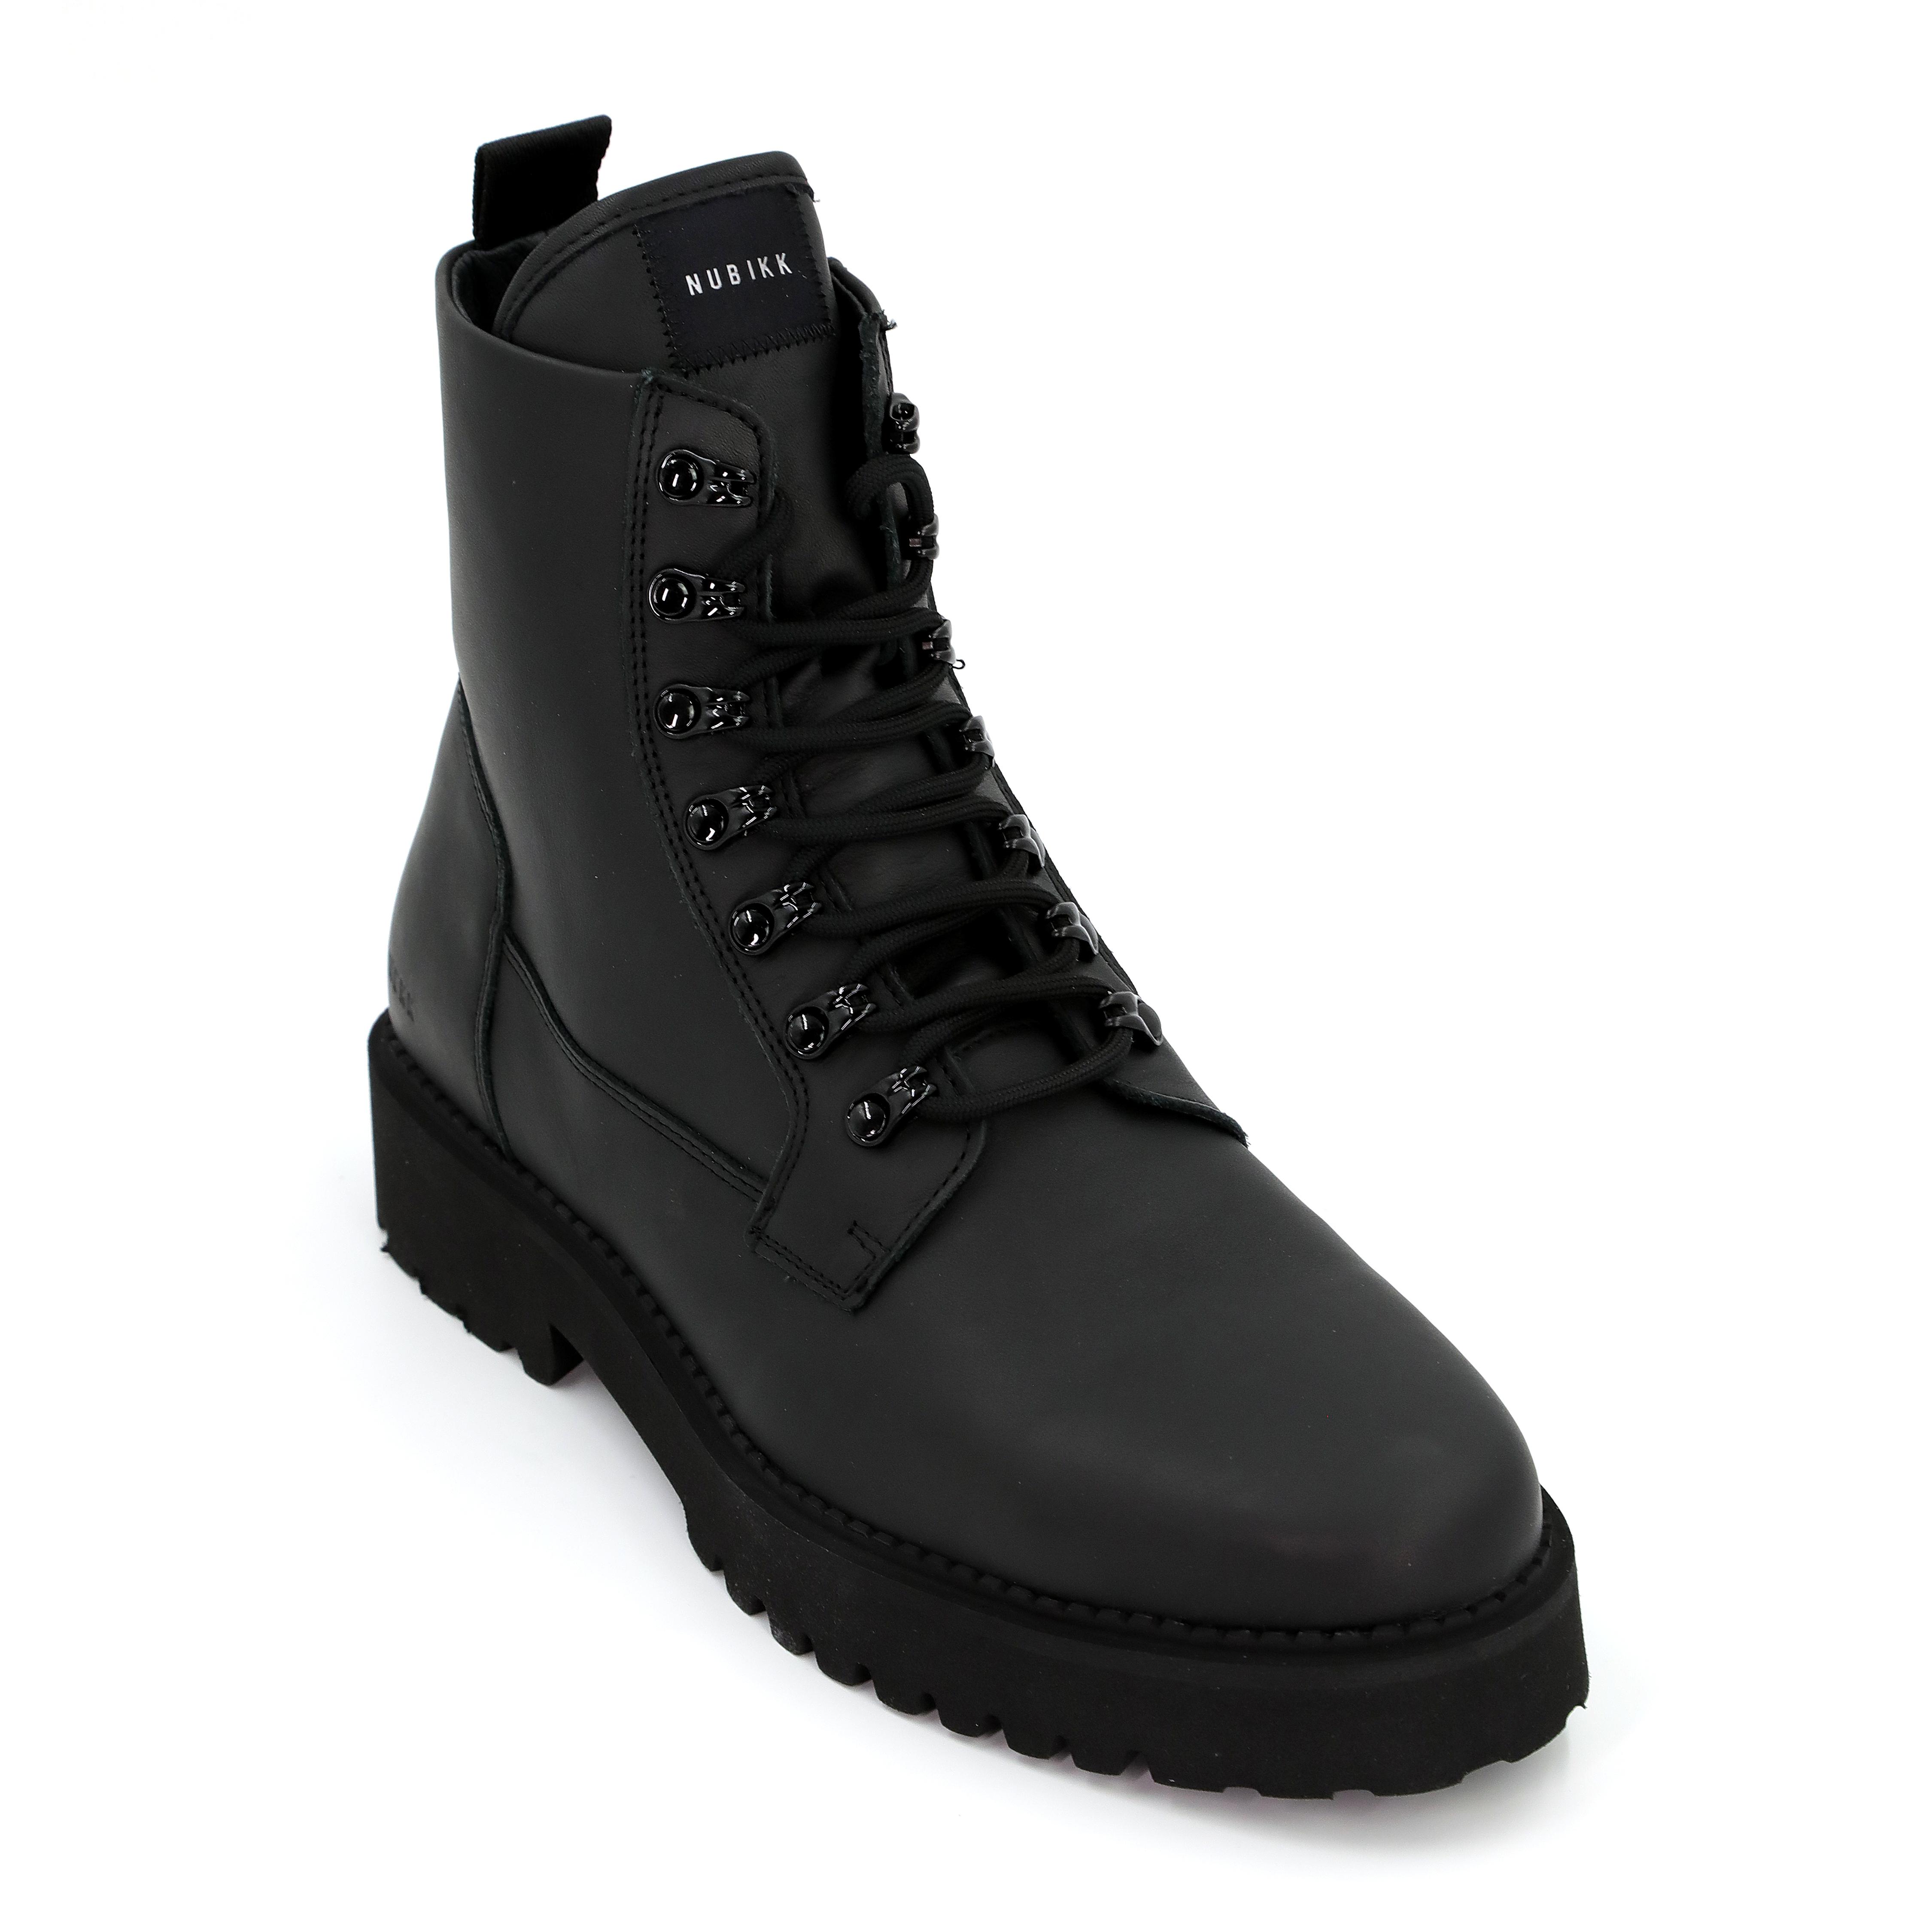 Мужские ботинки Nubikk, черные, цвет черный, размер 44 - фото 4